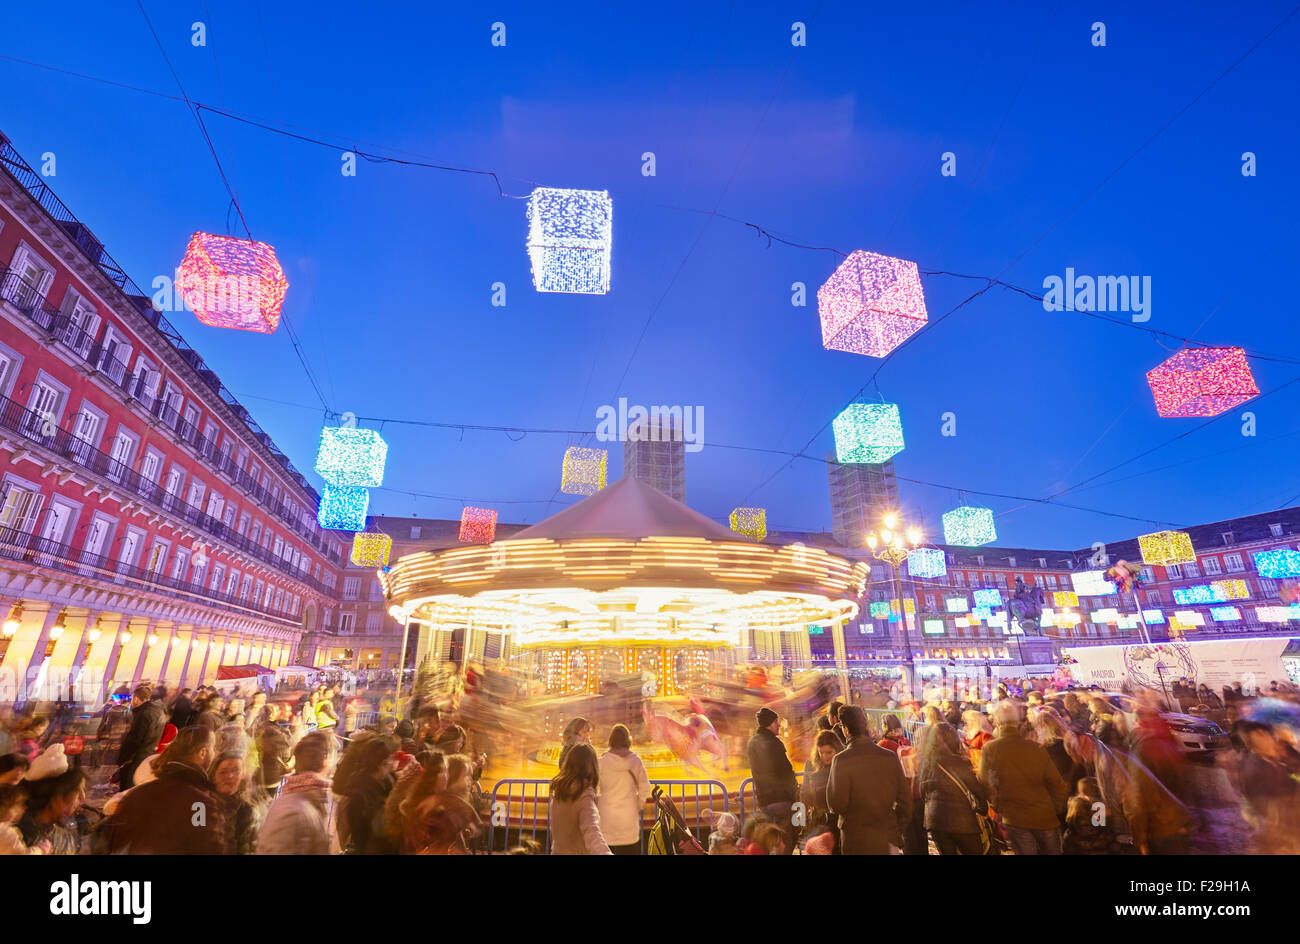 Carousel au marché de Noël sur la Plaza Mayor. Madrid, Espagne. Banque D'Images